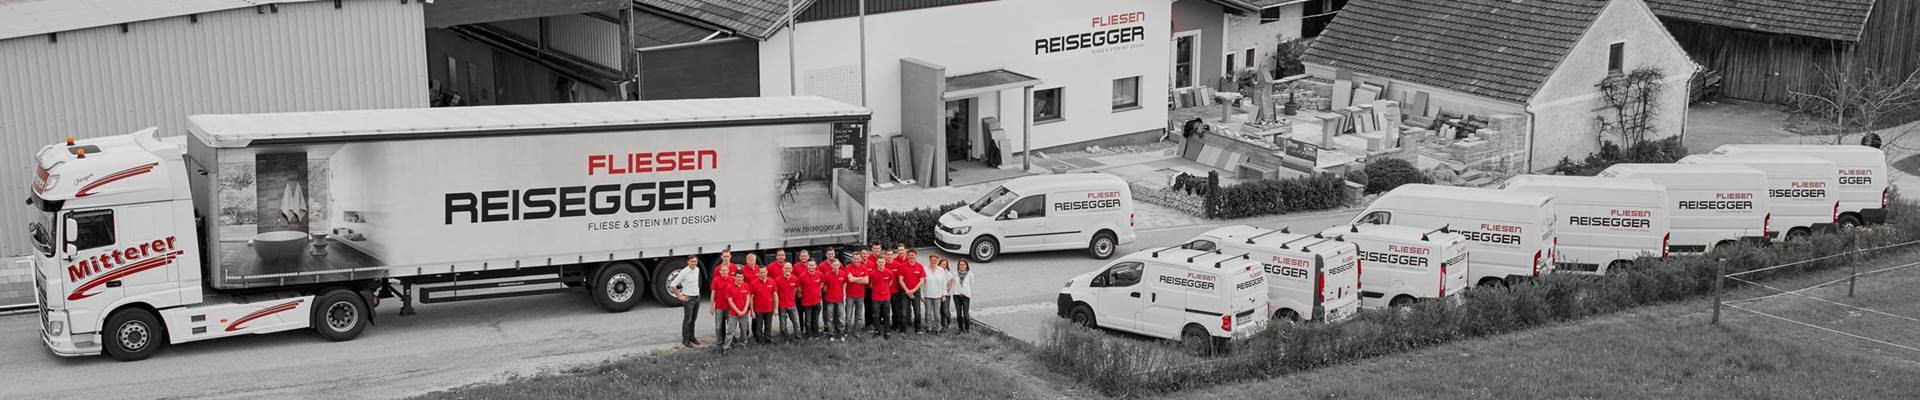 Reisegger Fliesen GmbH im Bezirk Ried im Innkreis